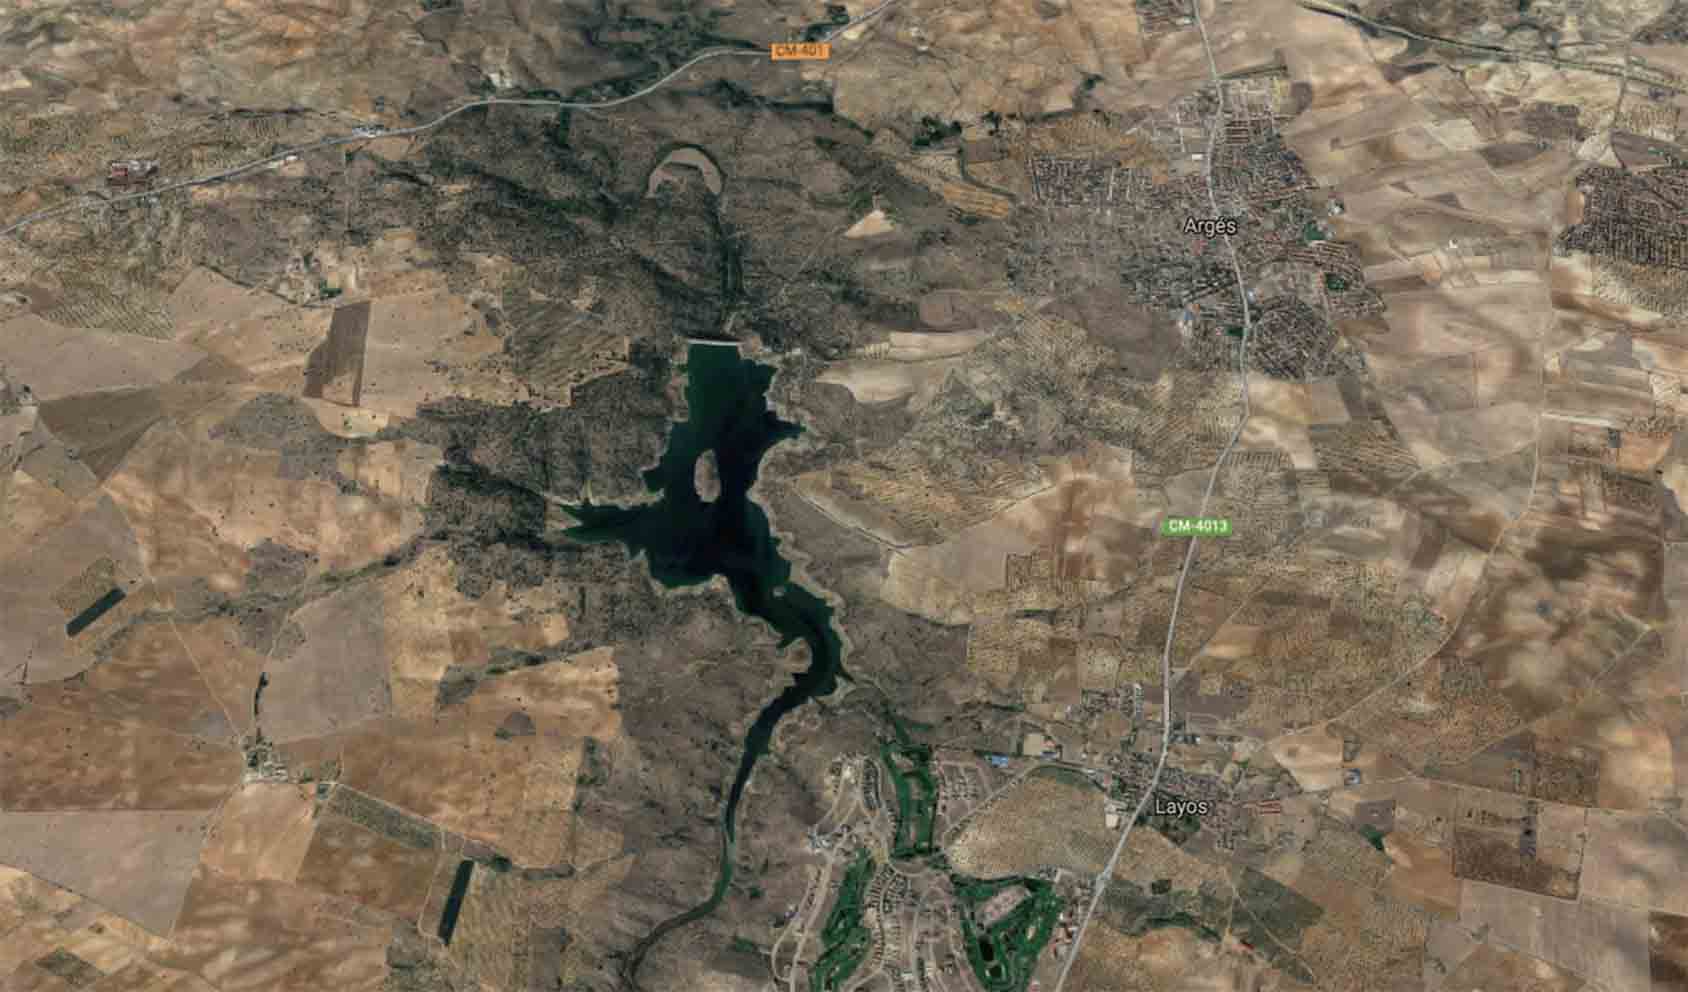 Vista aérea del embalse de Guajaraz, donde se busca al hombre desaparecido.